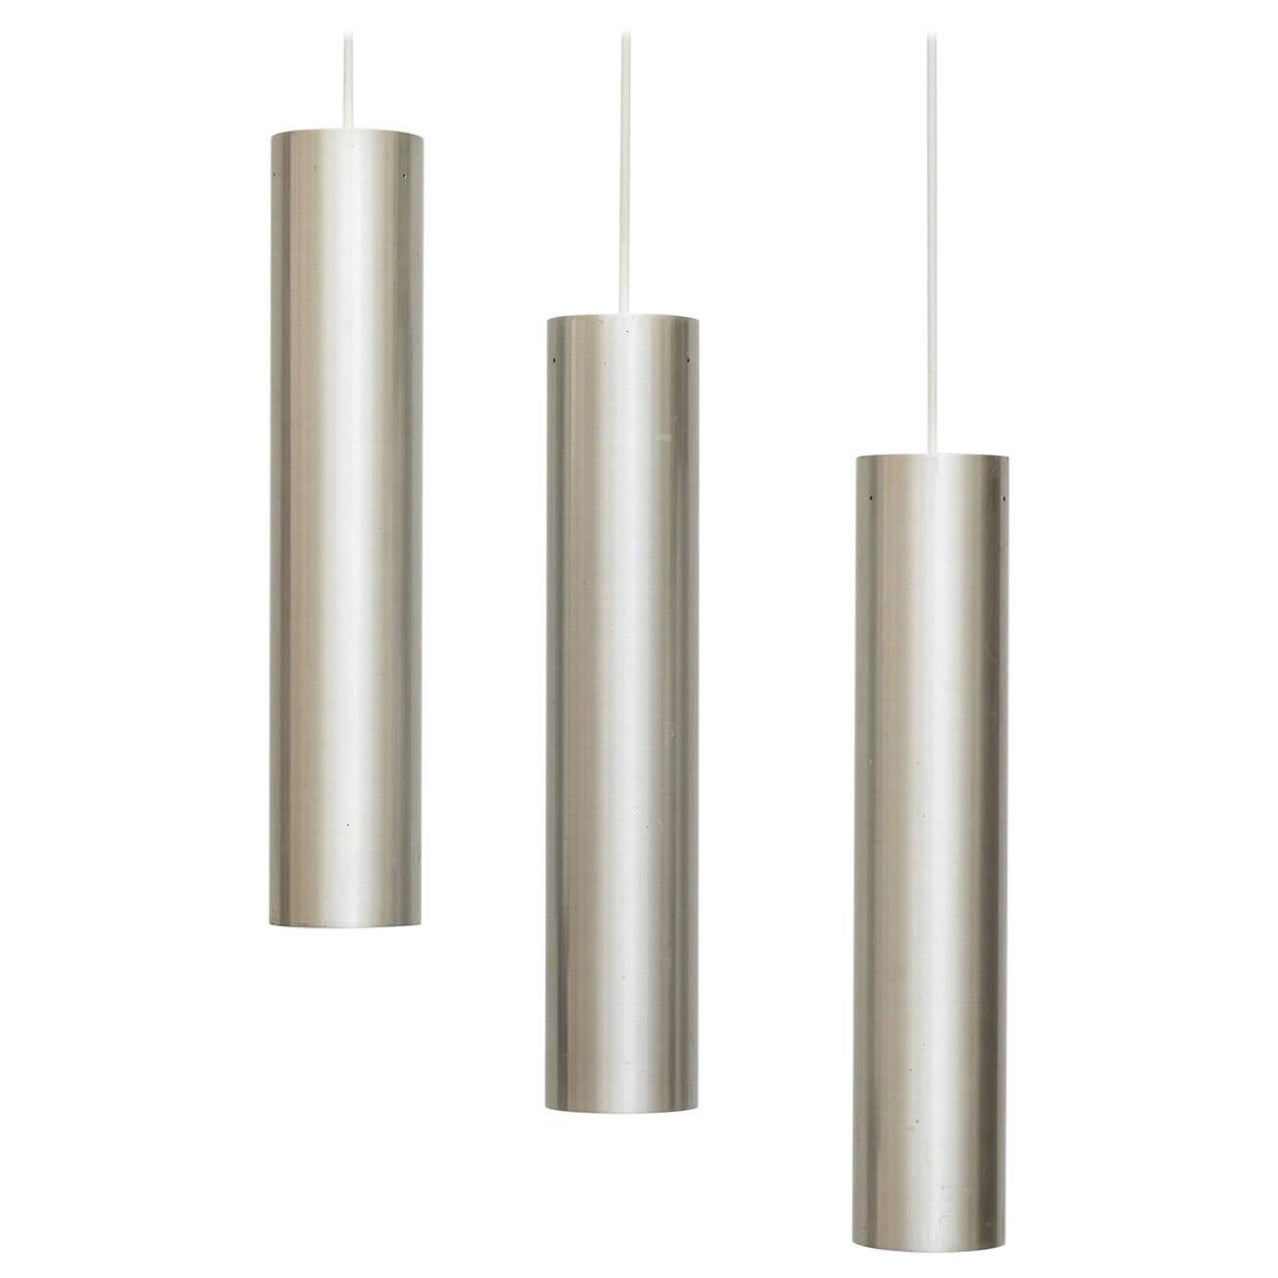 Set of Three RAAK Tubular Pendant Lights